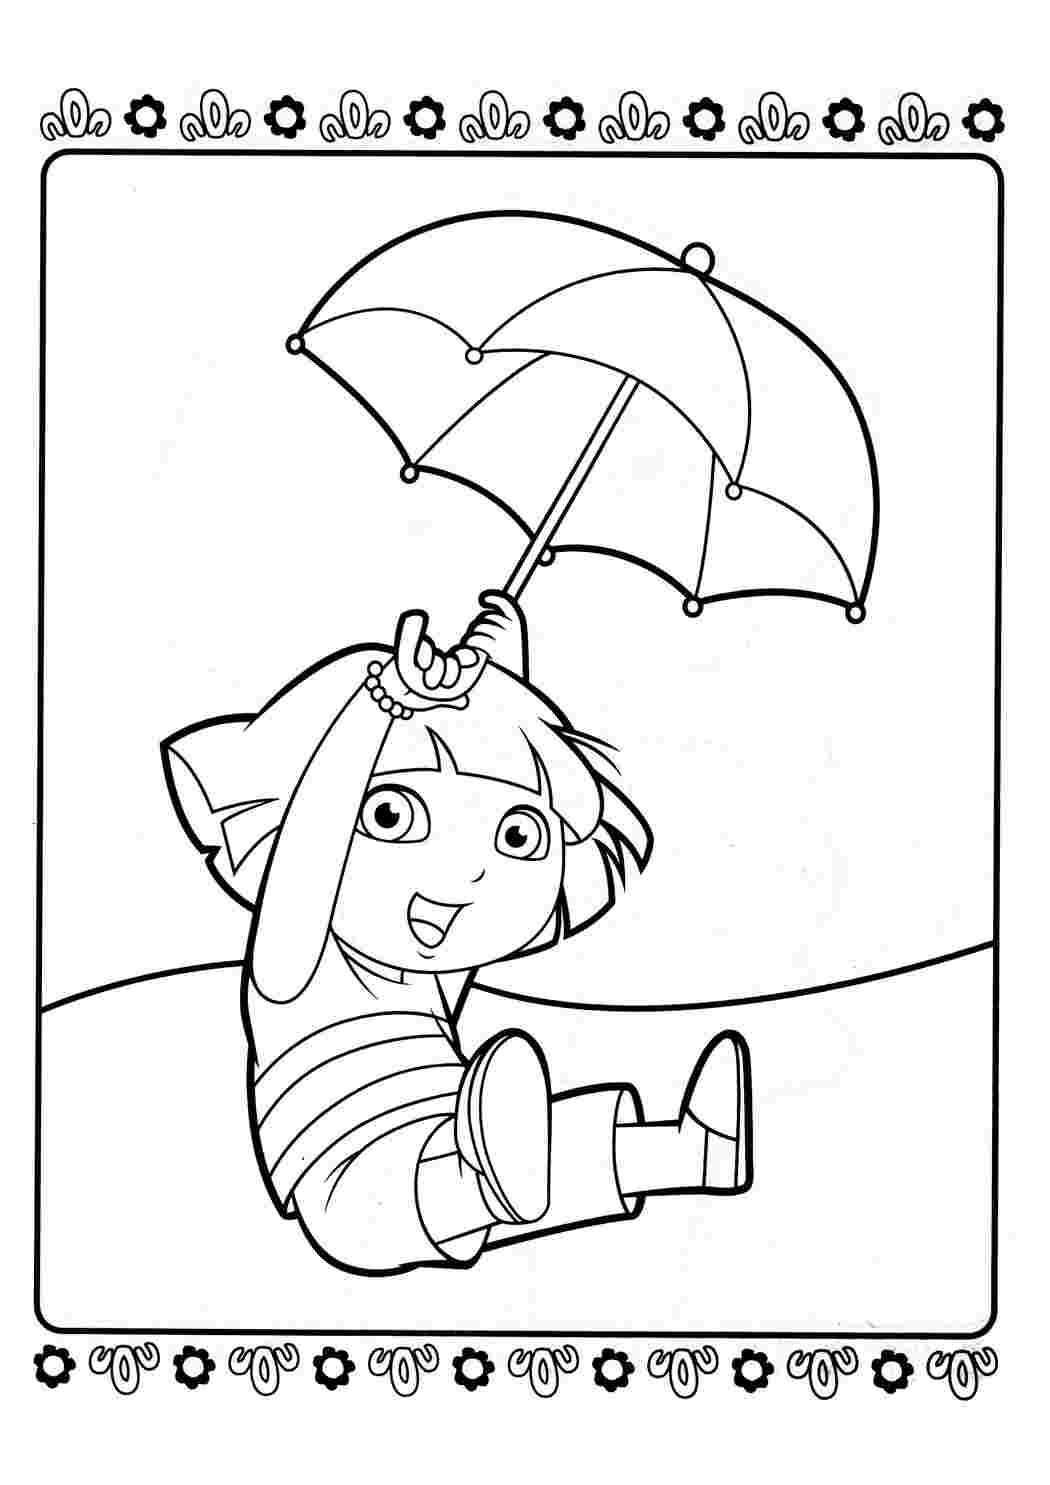 Раскраски даша играет с зонтиком. Картинки раскраски. даша играет с зонтиком. Раскраски для развития.